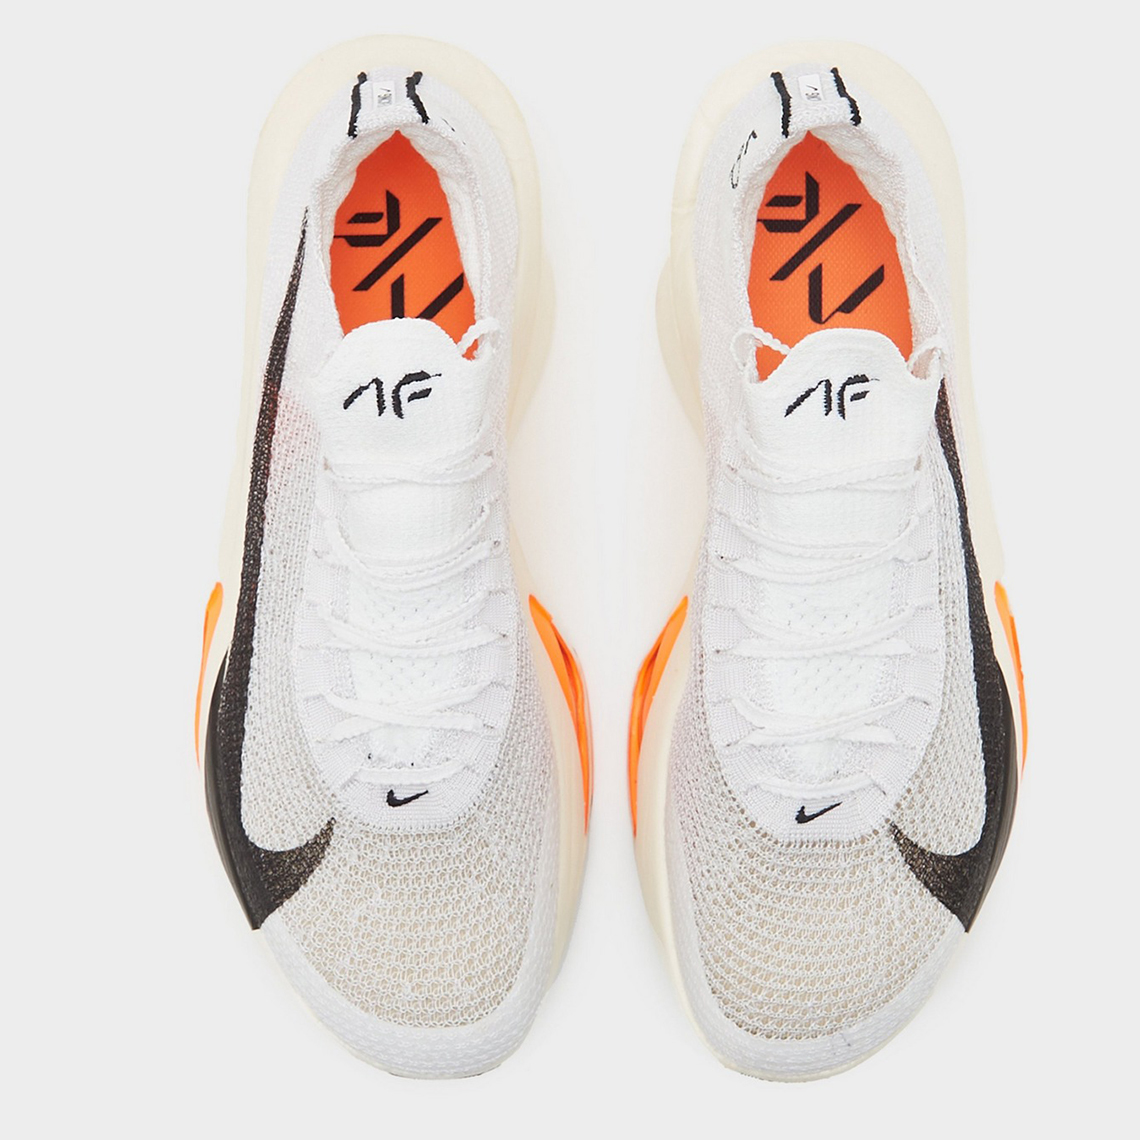 Nike Force Alphafly 3 Prototype Release Date 3